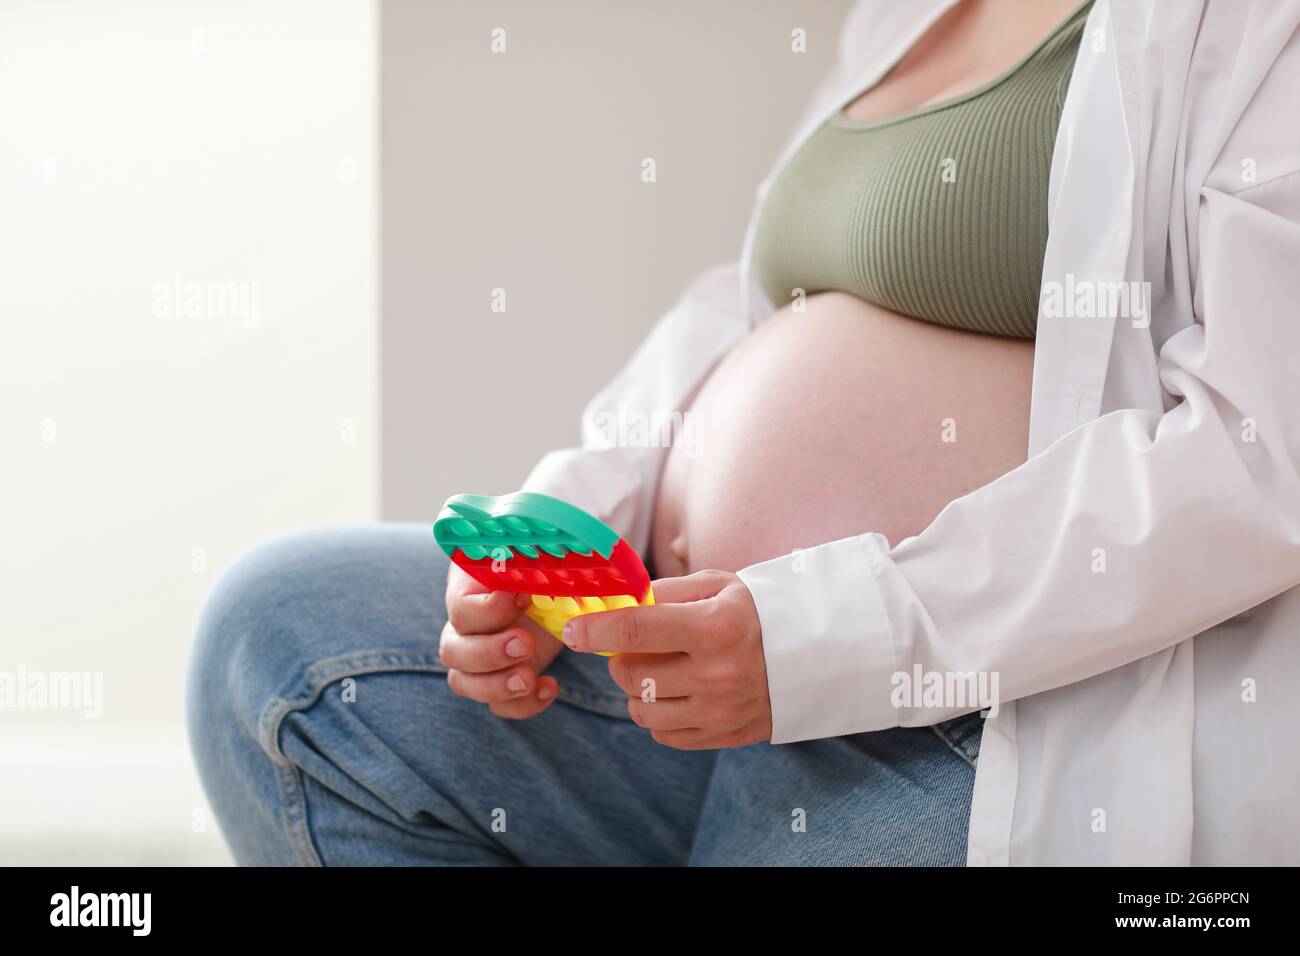 https://c8.alamy.com/compfr/2g6ppcn/femme-enceinte-avec-grand-ventre-avance-grossesse-est-en-utilisant-pop-il-jouet-sensoriel-fille-appuie-sur-des-bulles-de-silicone-colorees-soulagement-du-stress-et-de-l-anxiete-tr-2g6ppcn.jpg